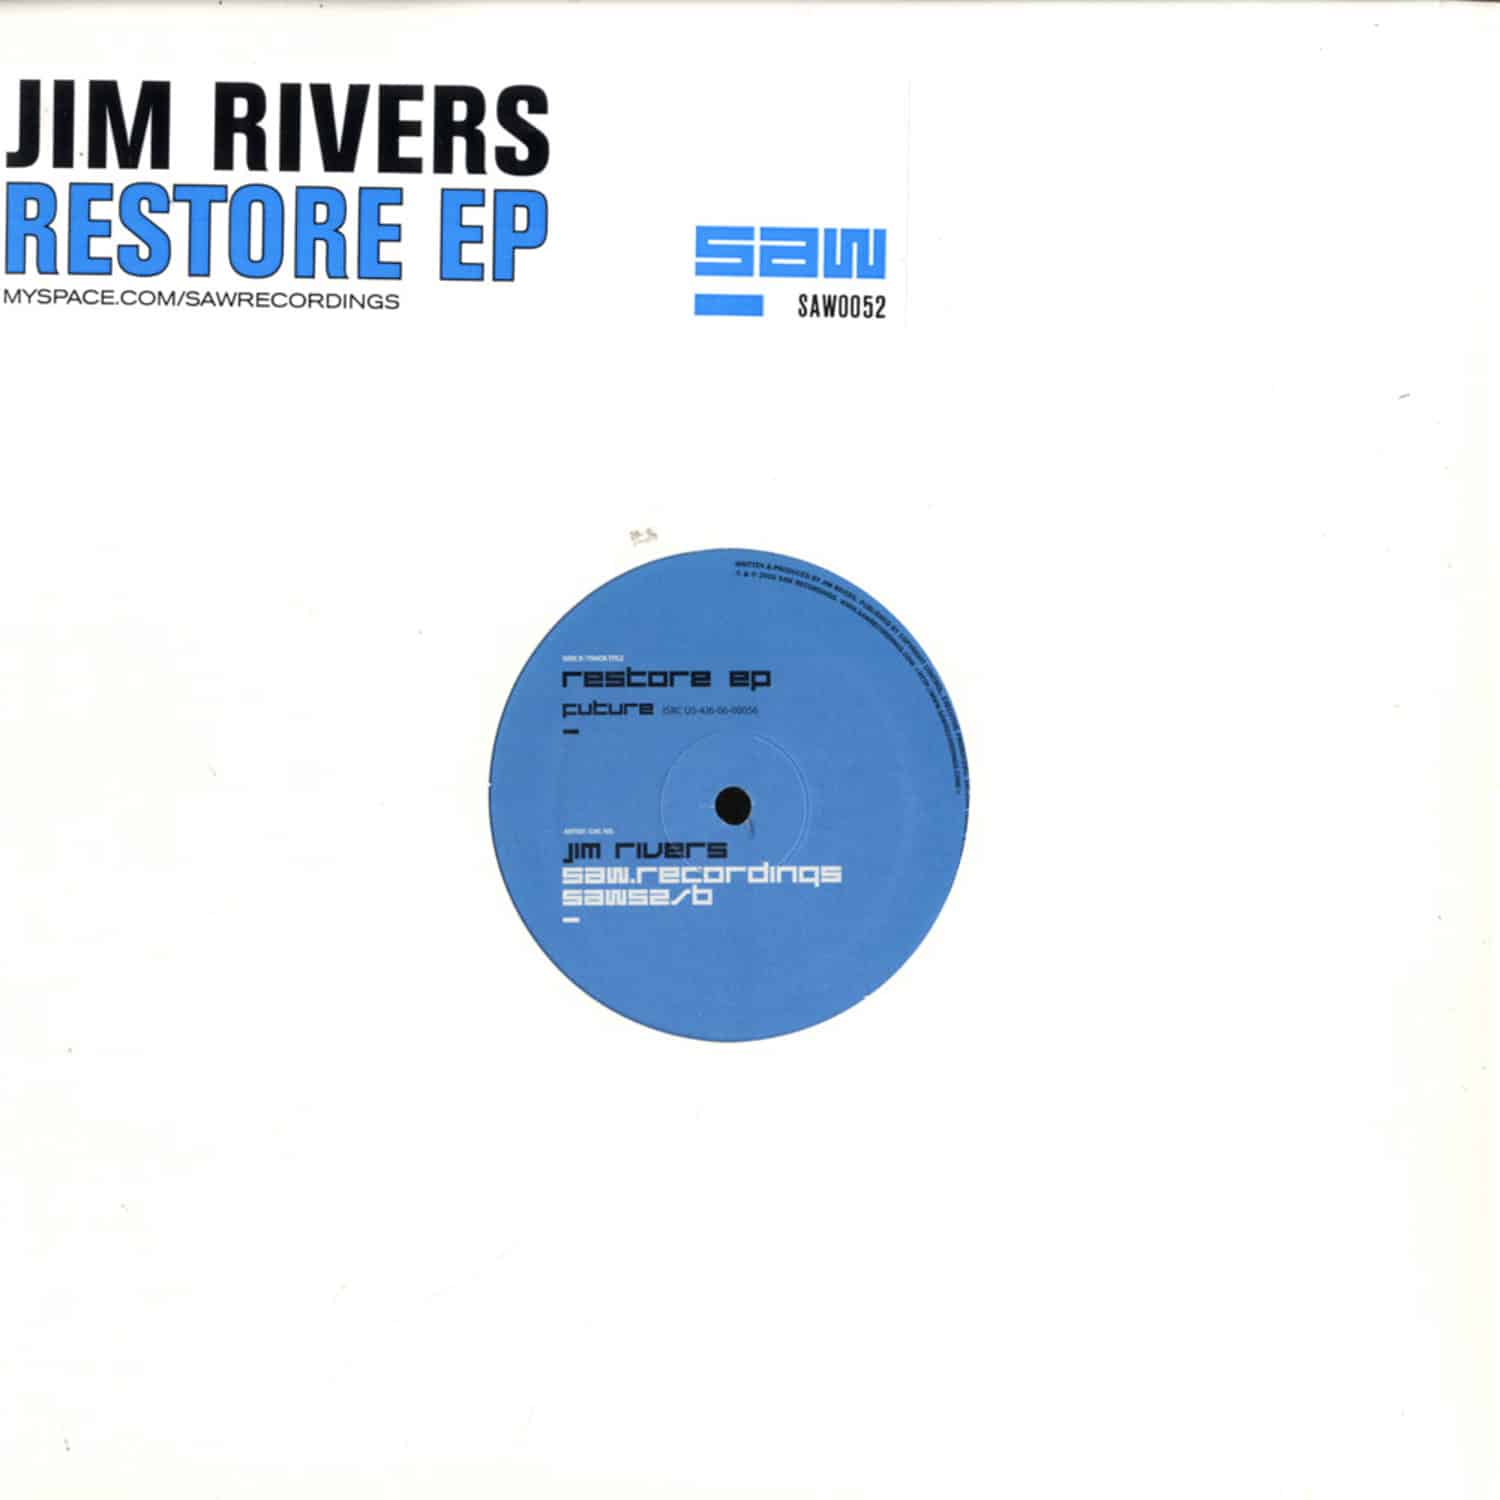 Jim Rivers - RESTORE EP